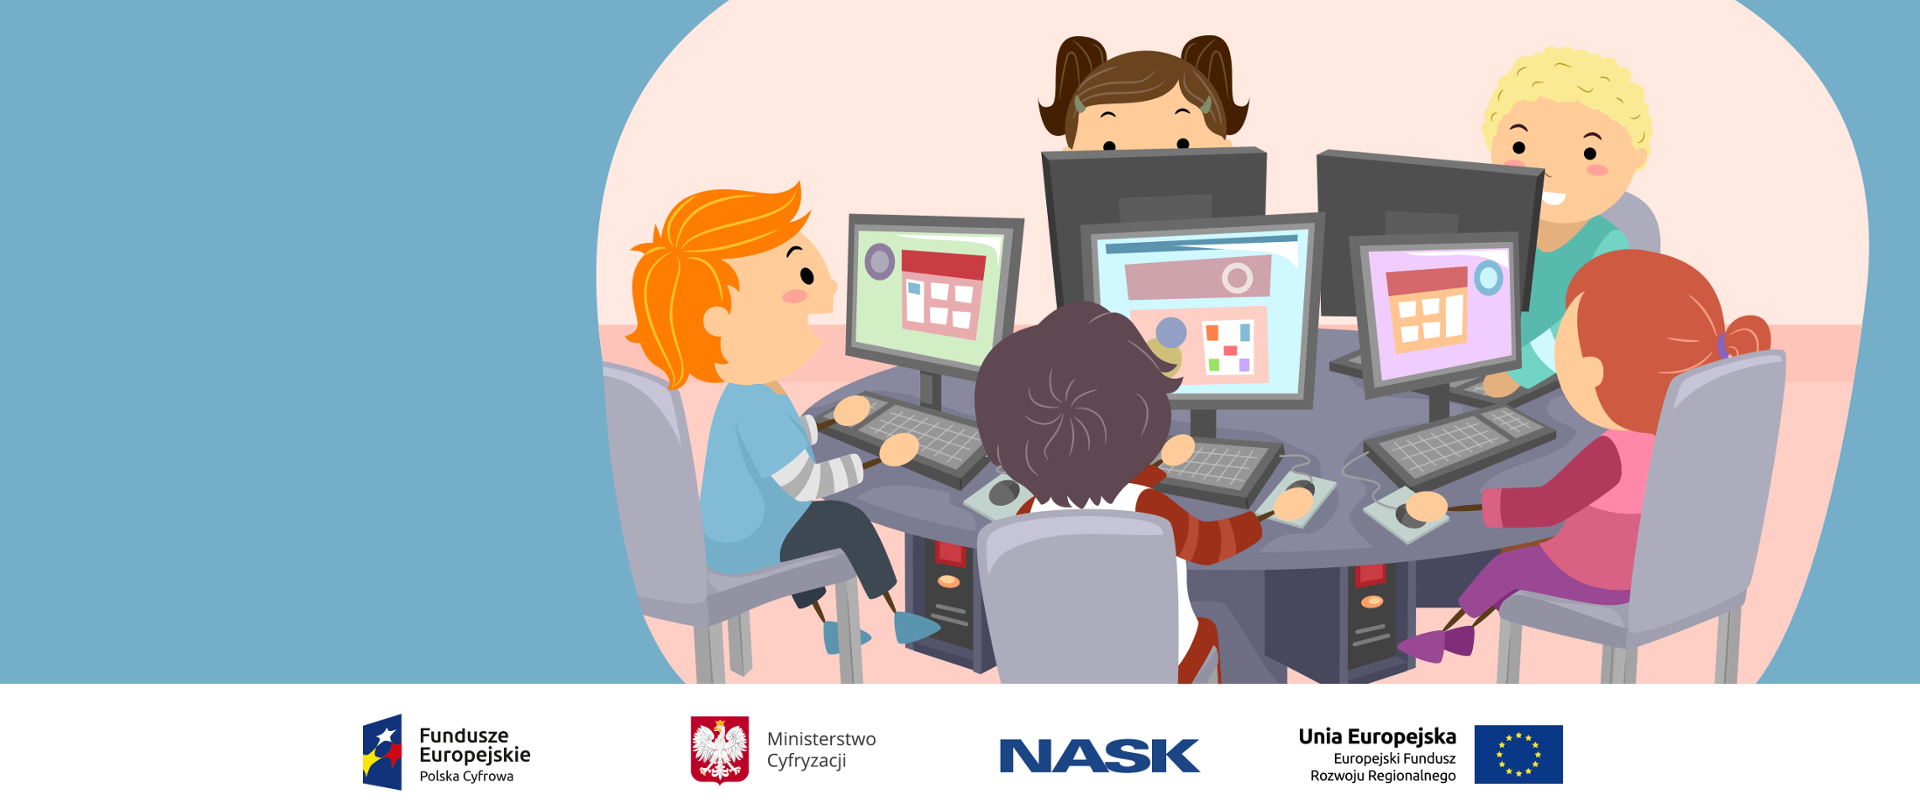 Na zdjęciu widać narysowane dzieci przed komputerami. Na dole zdjęcia umieszczone są logotypy: Fundusze Europejskie. Polska Cyfrowa, Ministerstwo Cyfryzacji, NASK oraz Unia Europejska. Europejski Fundusz Rozwoju Regionalnego. 